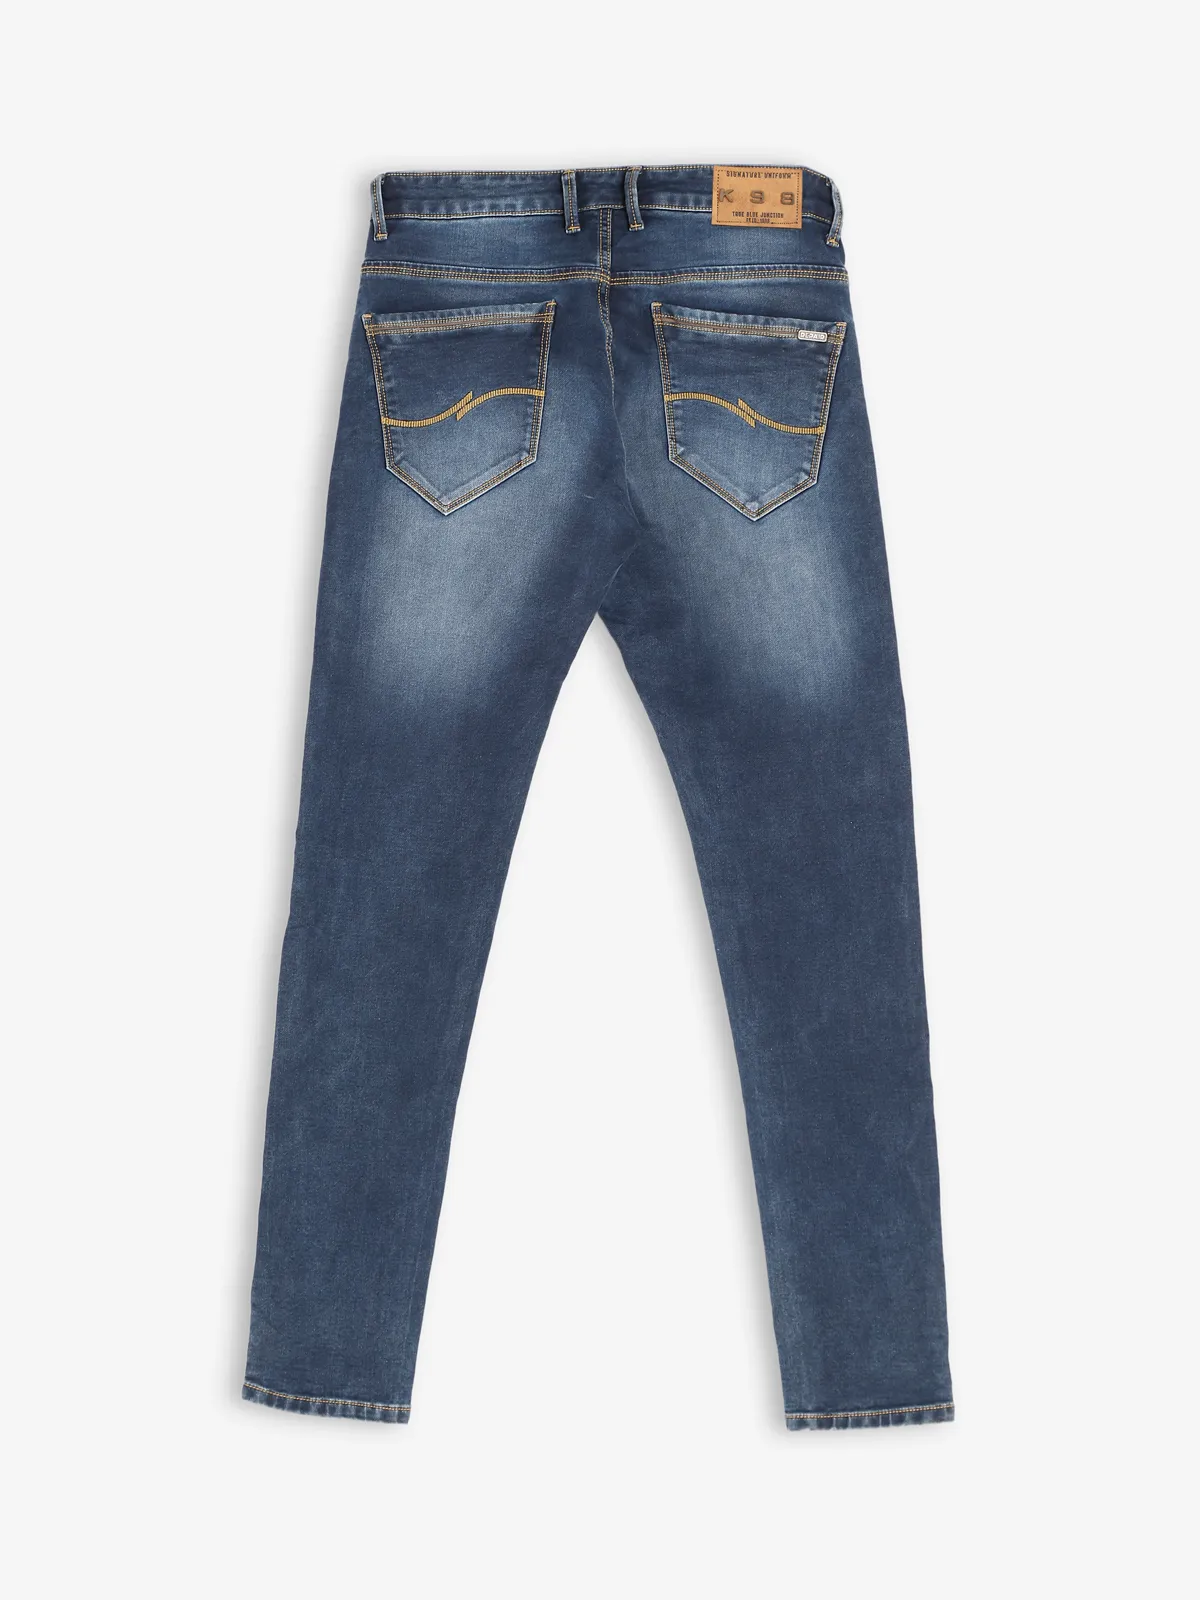 Kozzak washed blue super skinny fit jeans